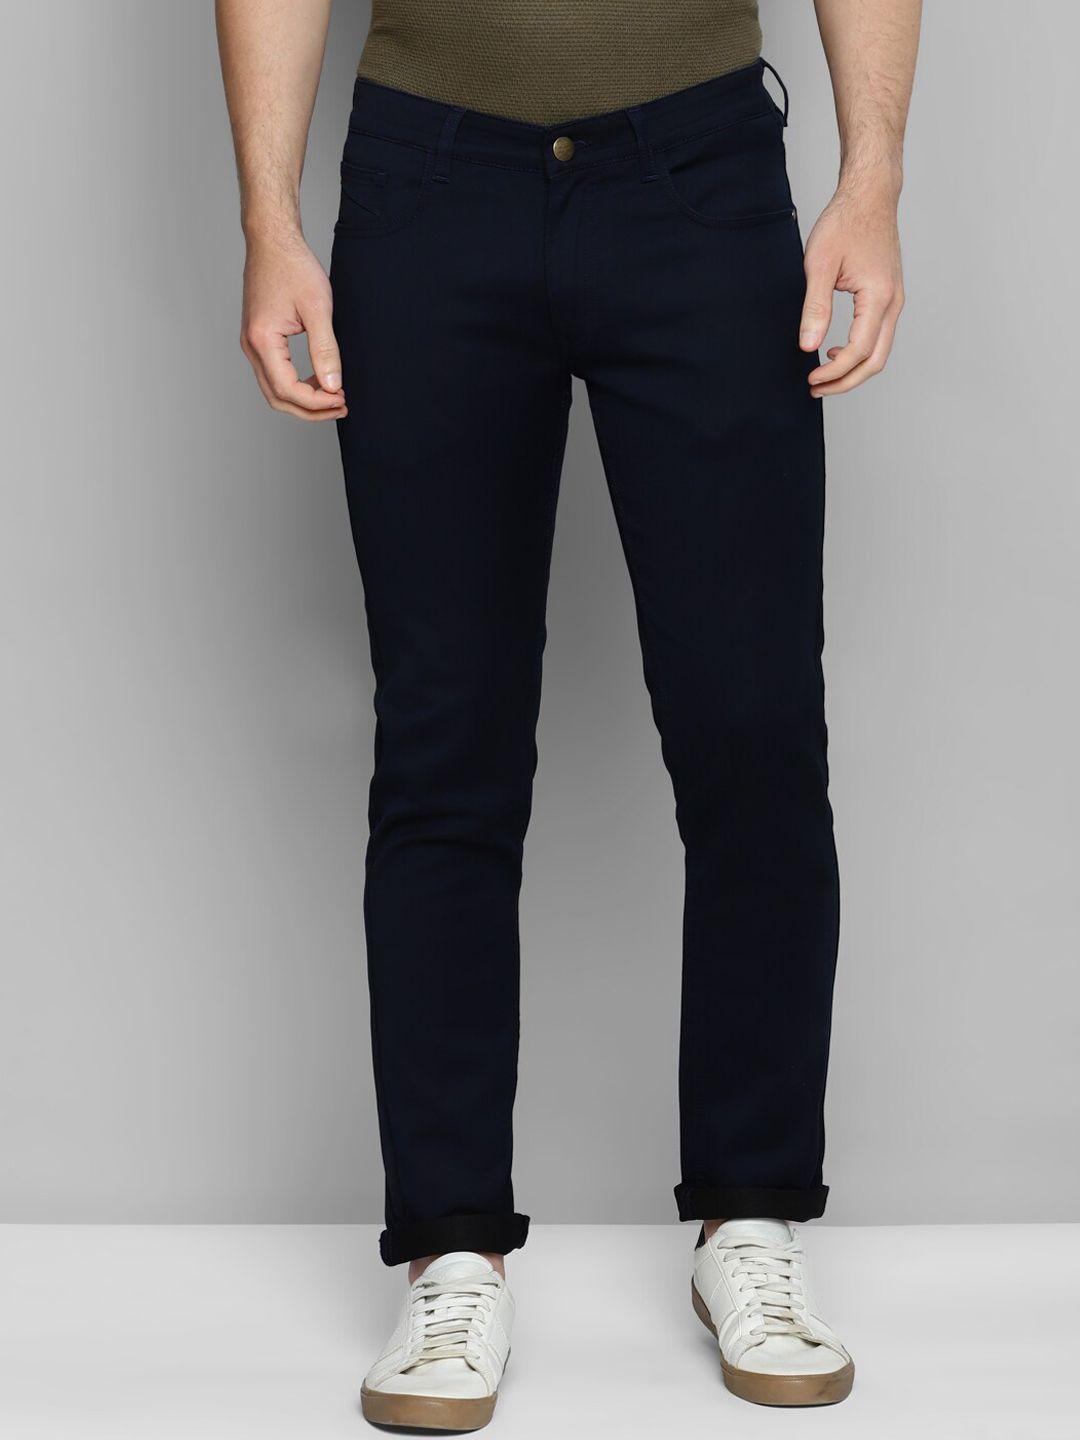 allen cooper men comfort clean look mid-rise cotton stretchable jeans